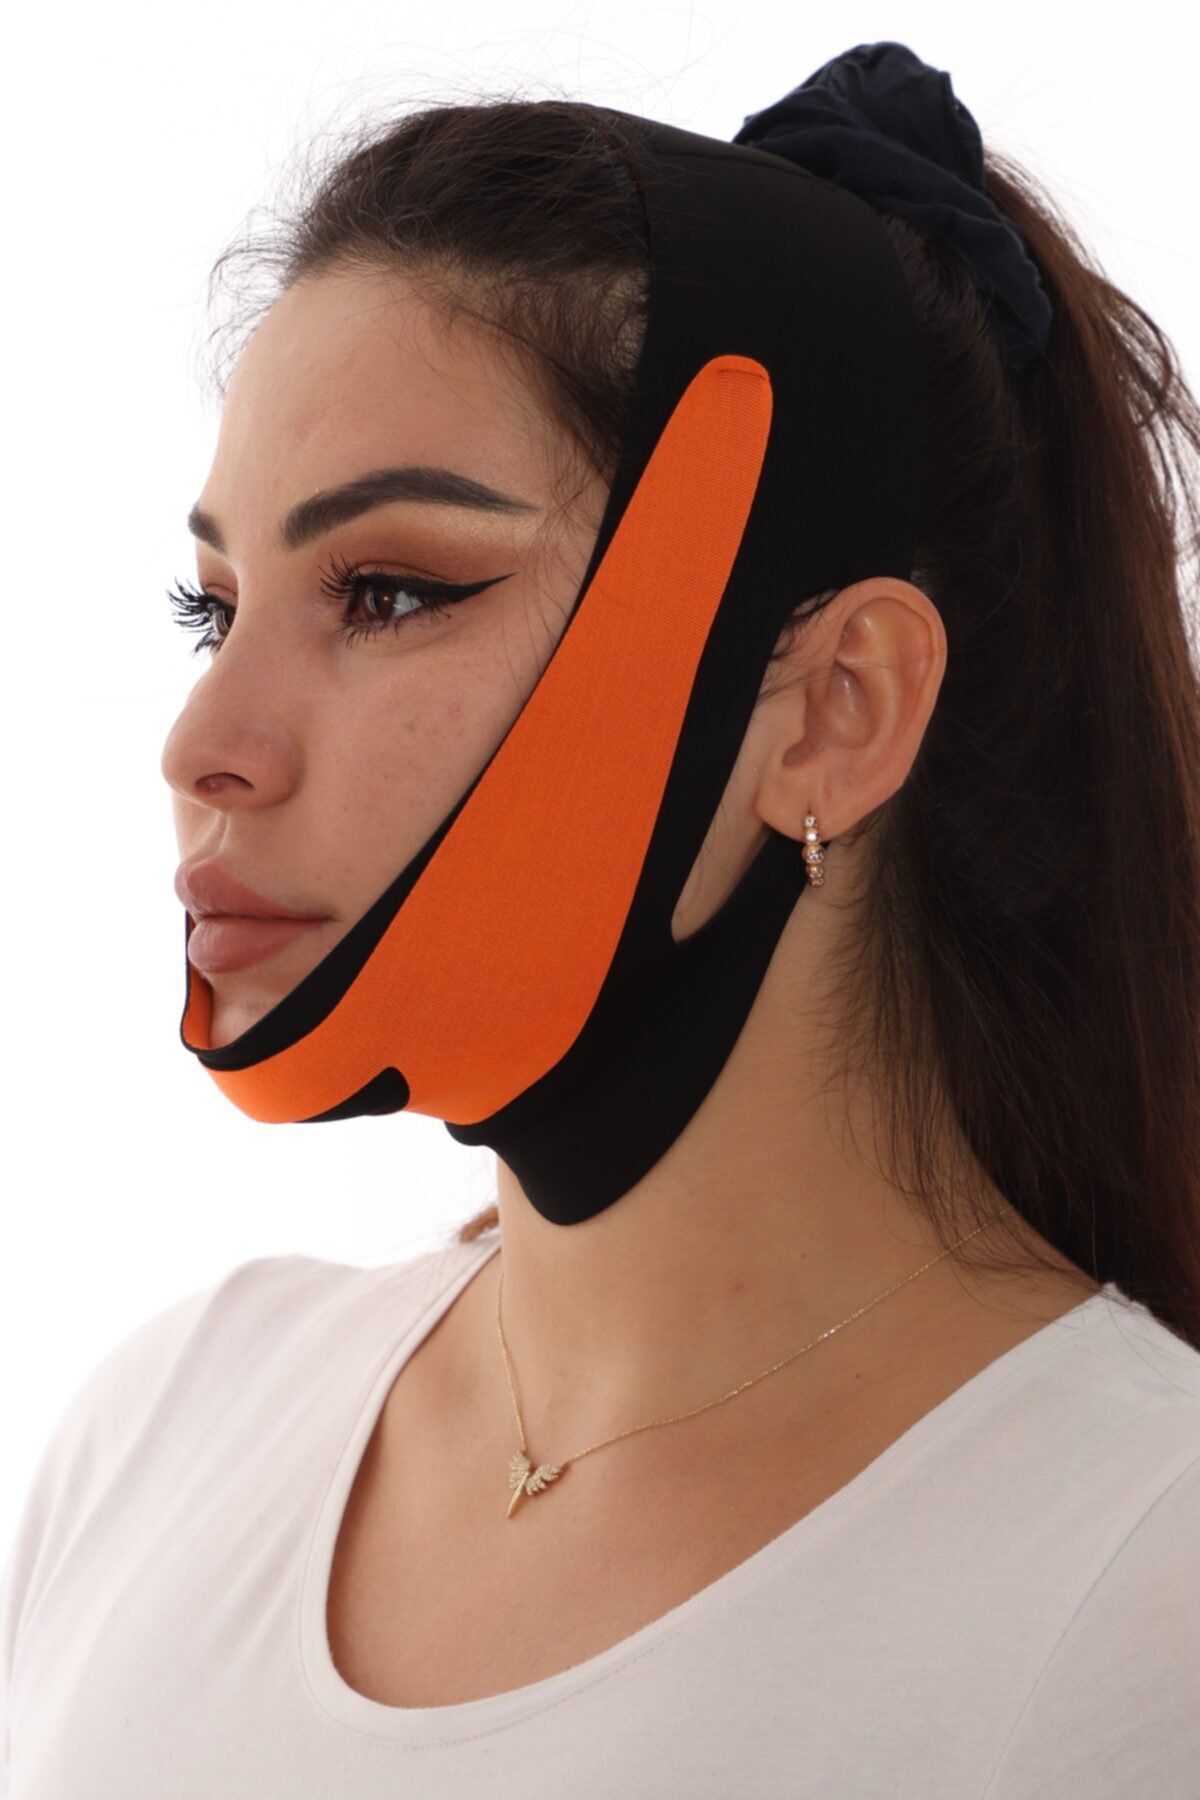 SAUNA SUIT Çene Boyun Bandı Yüz Liposuction Gıdı Yüz Korsesi Bandajı